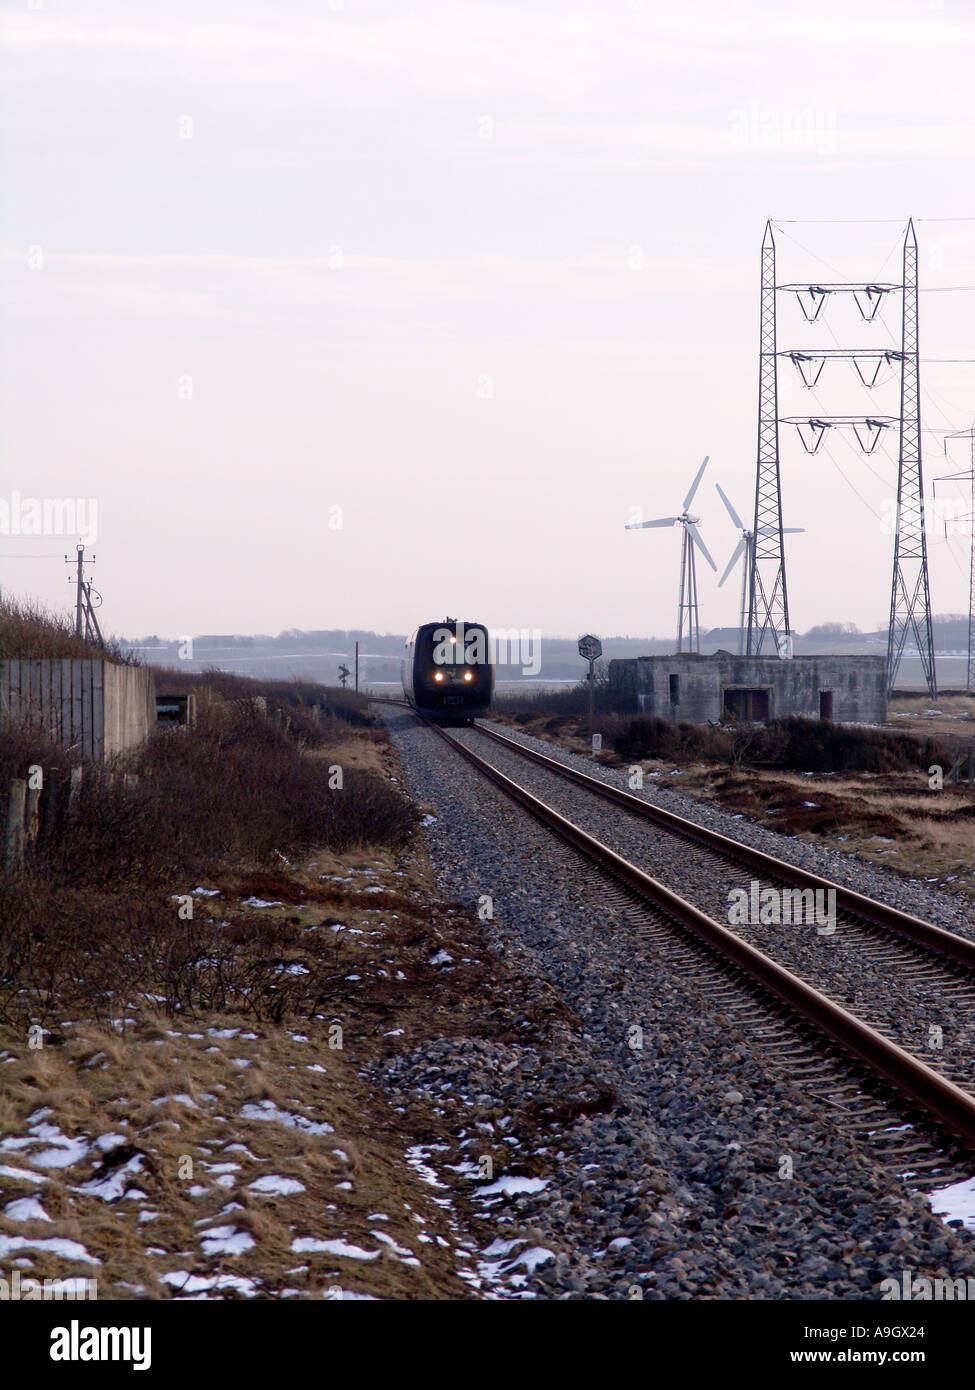 Dänische produzierten IC 3 Zug auf der Strecke Stockfoto